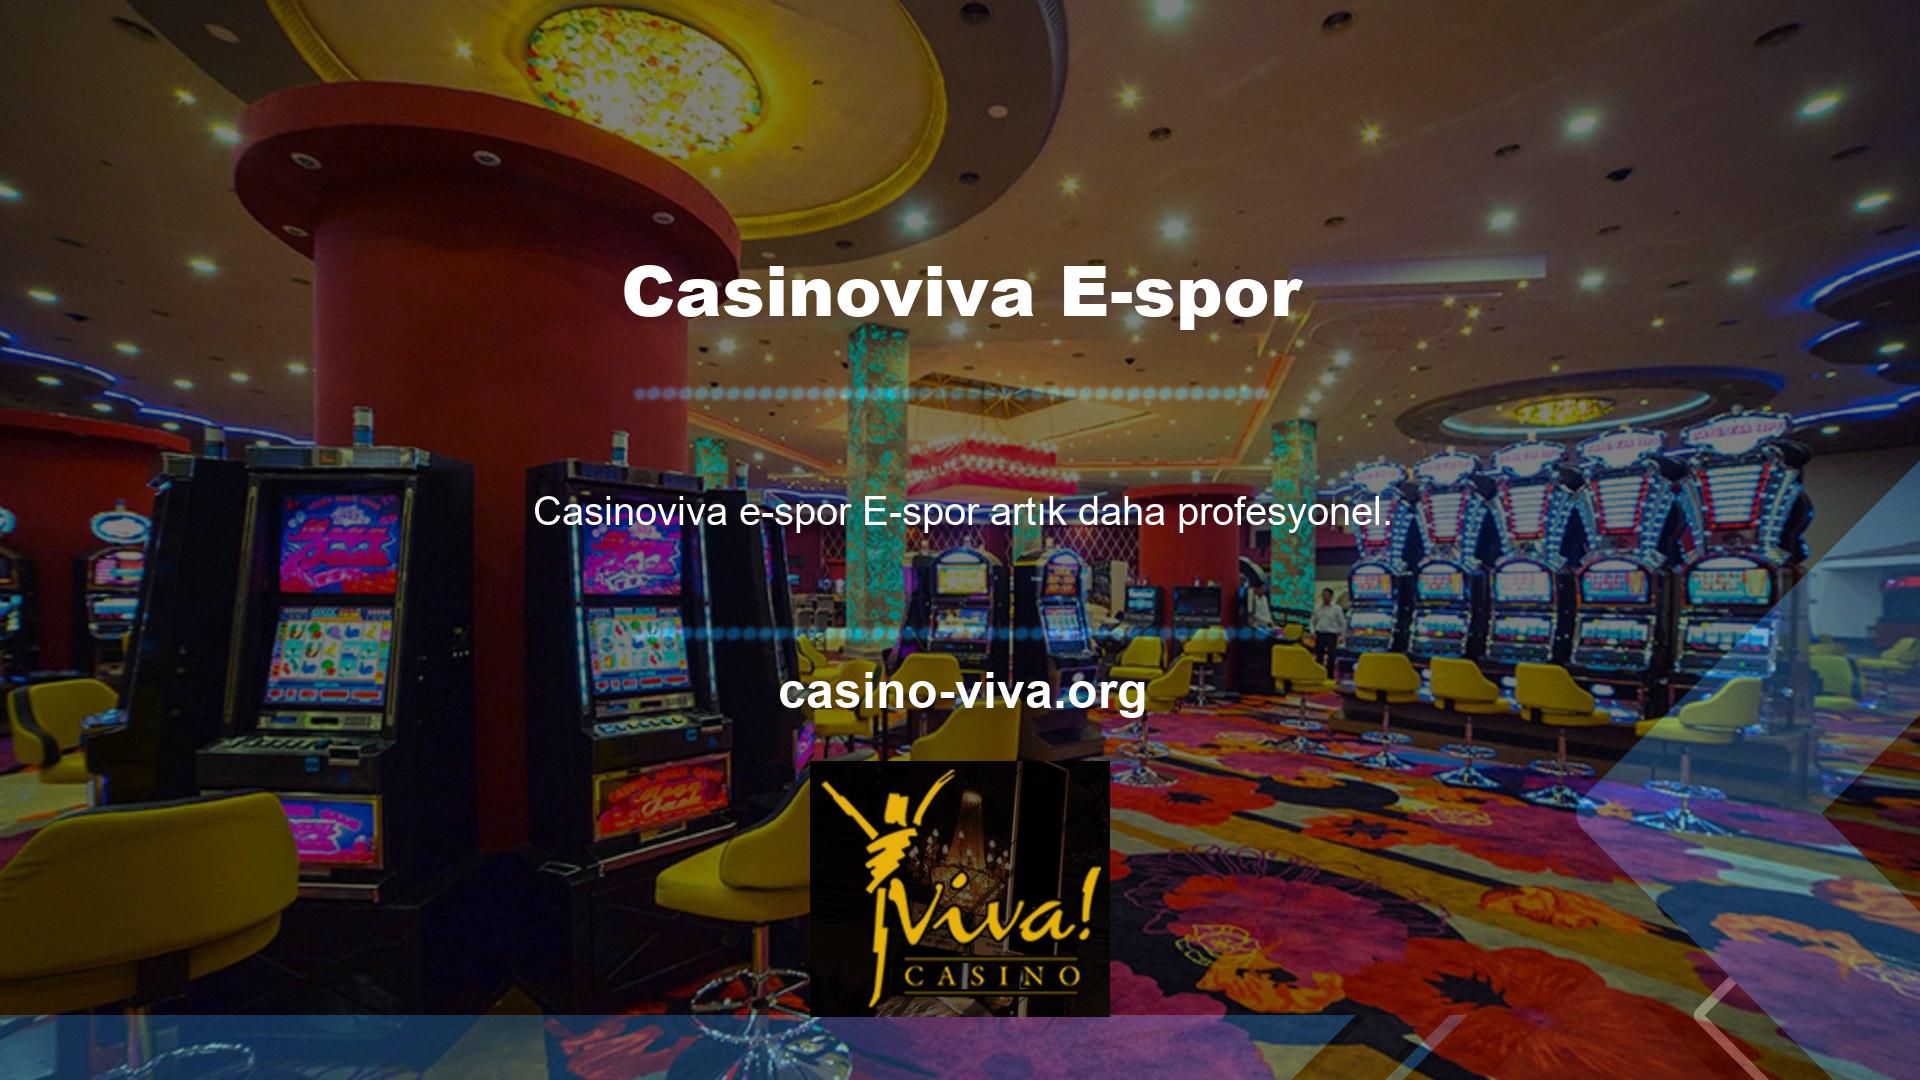 Casinoviva E-spor